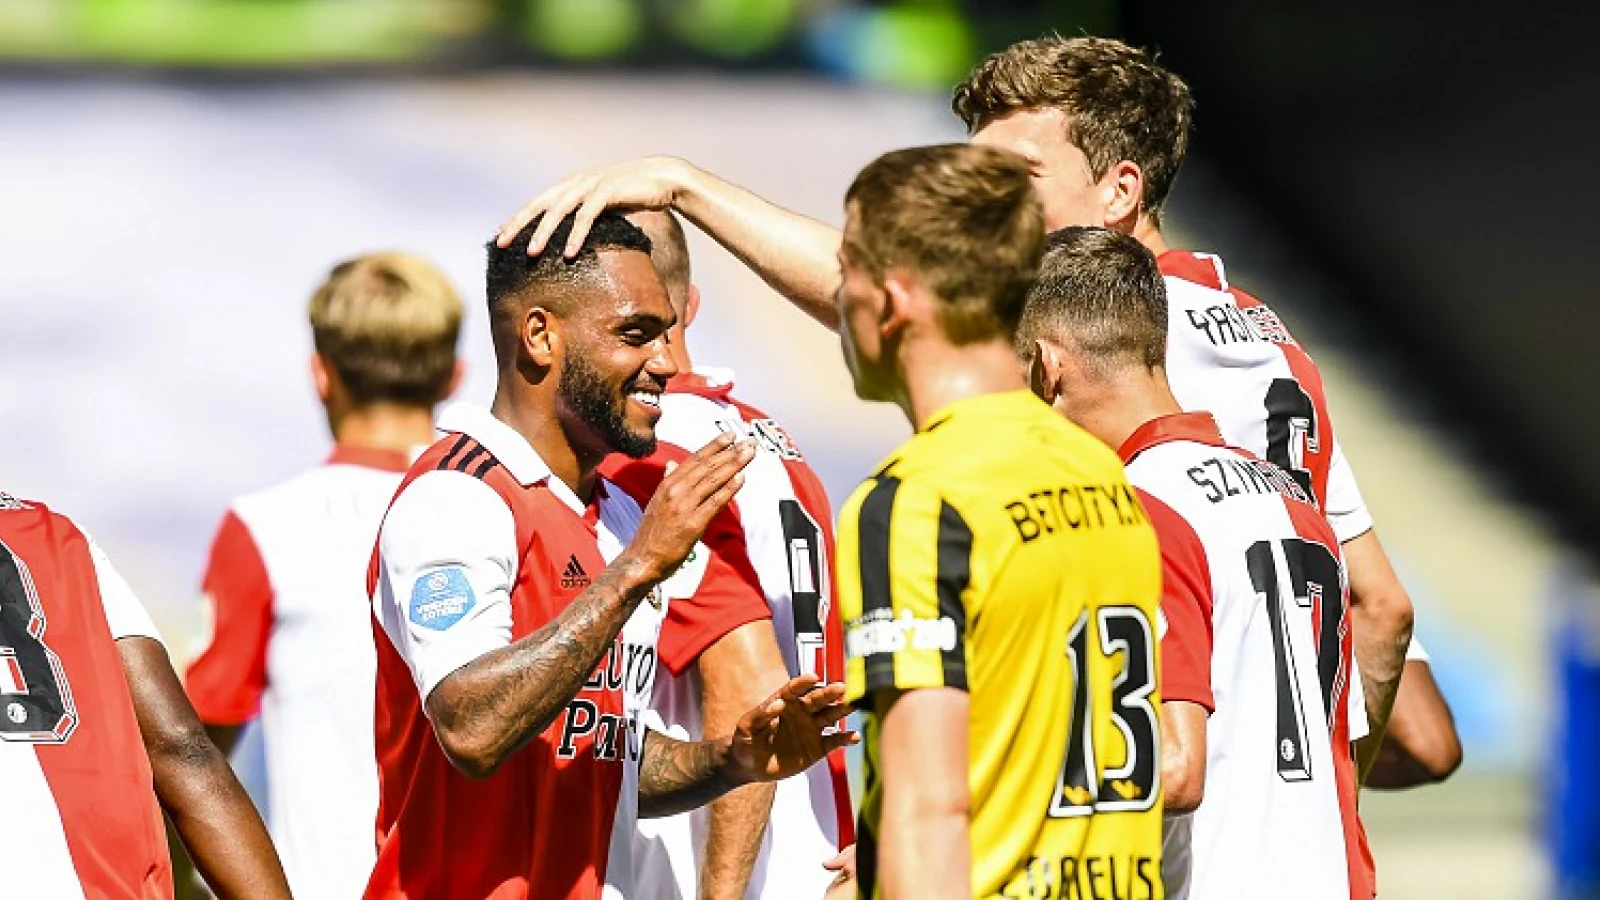 'De verwachtingen over Feyenoord waren hoger door die 5-2 zege op Vitesse'